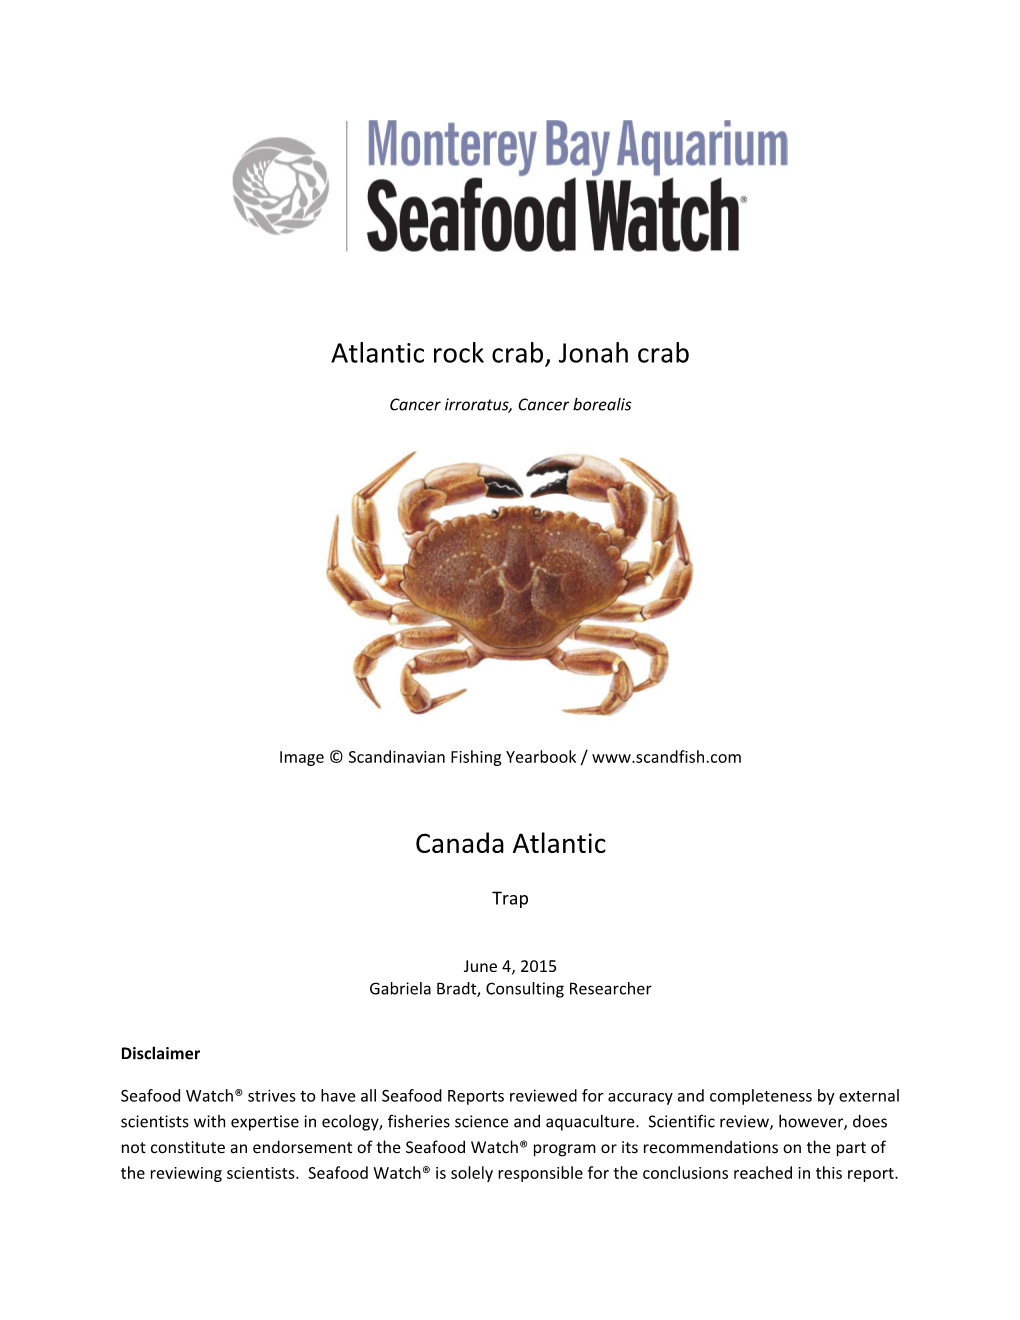 Atlantic Rock Crab, Jonah Crab Canada Atlantic